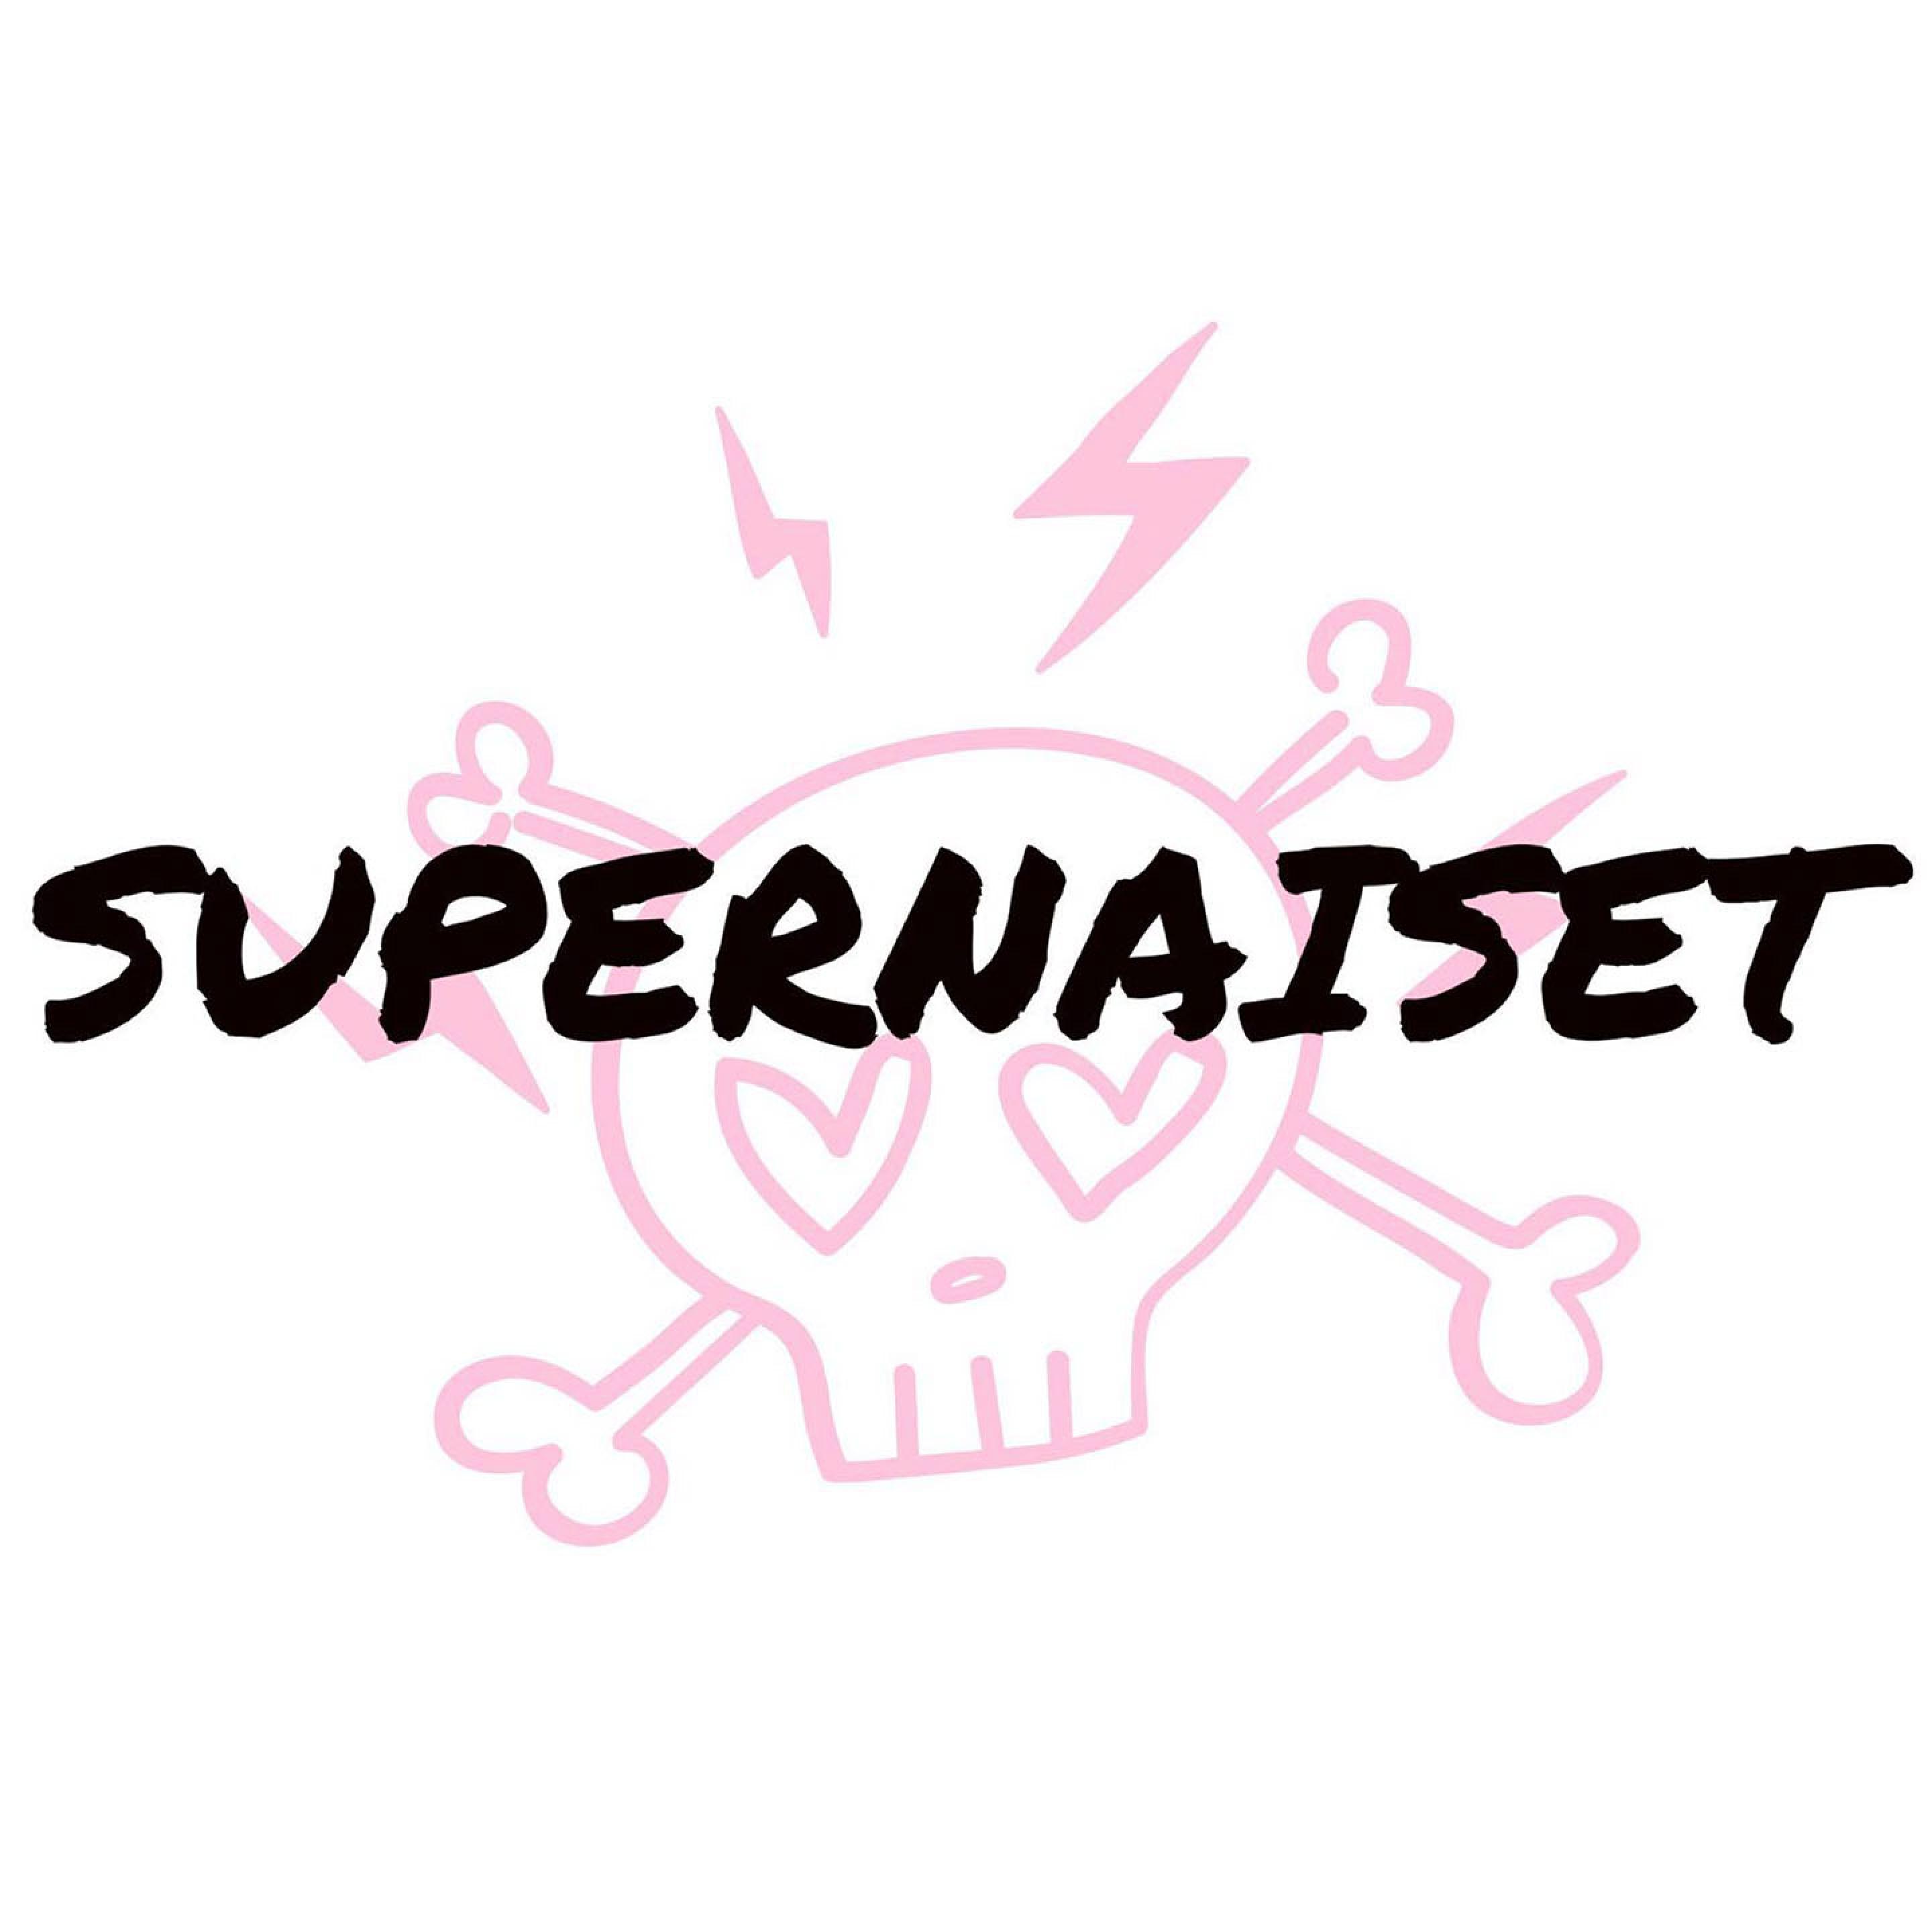 Supernaiset - podcast